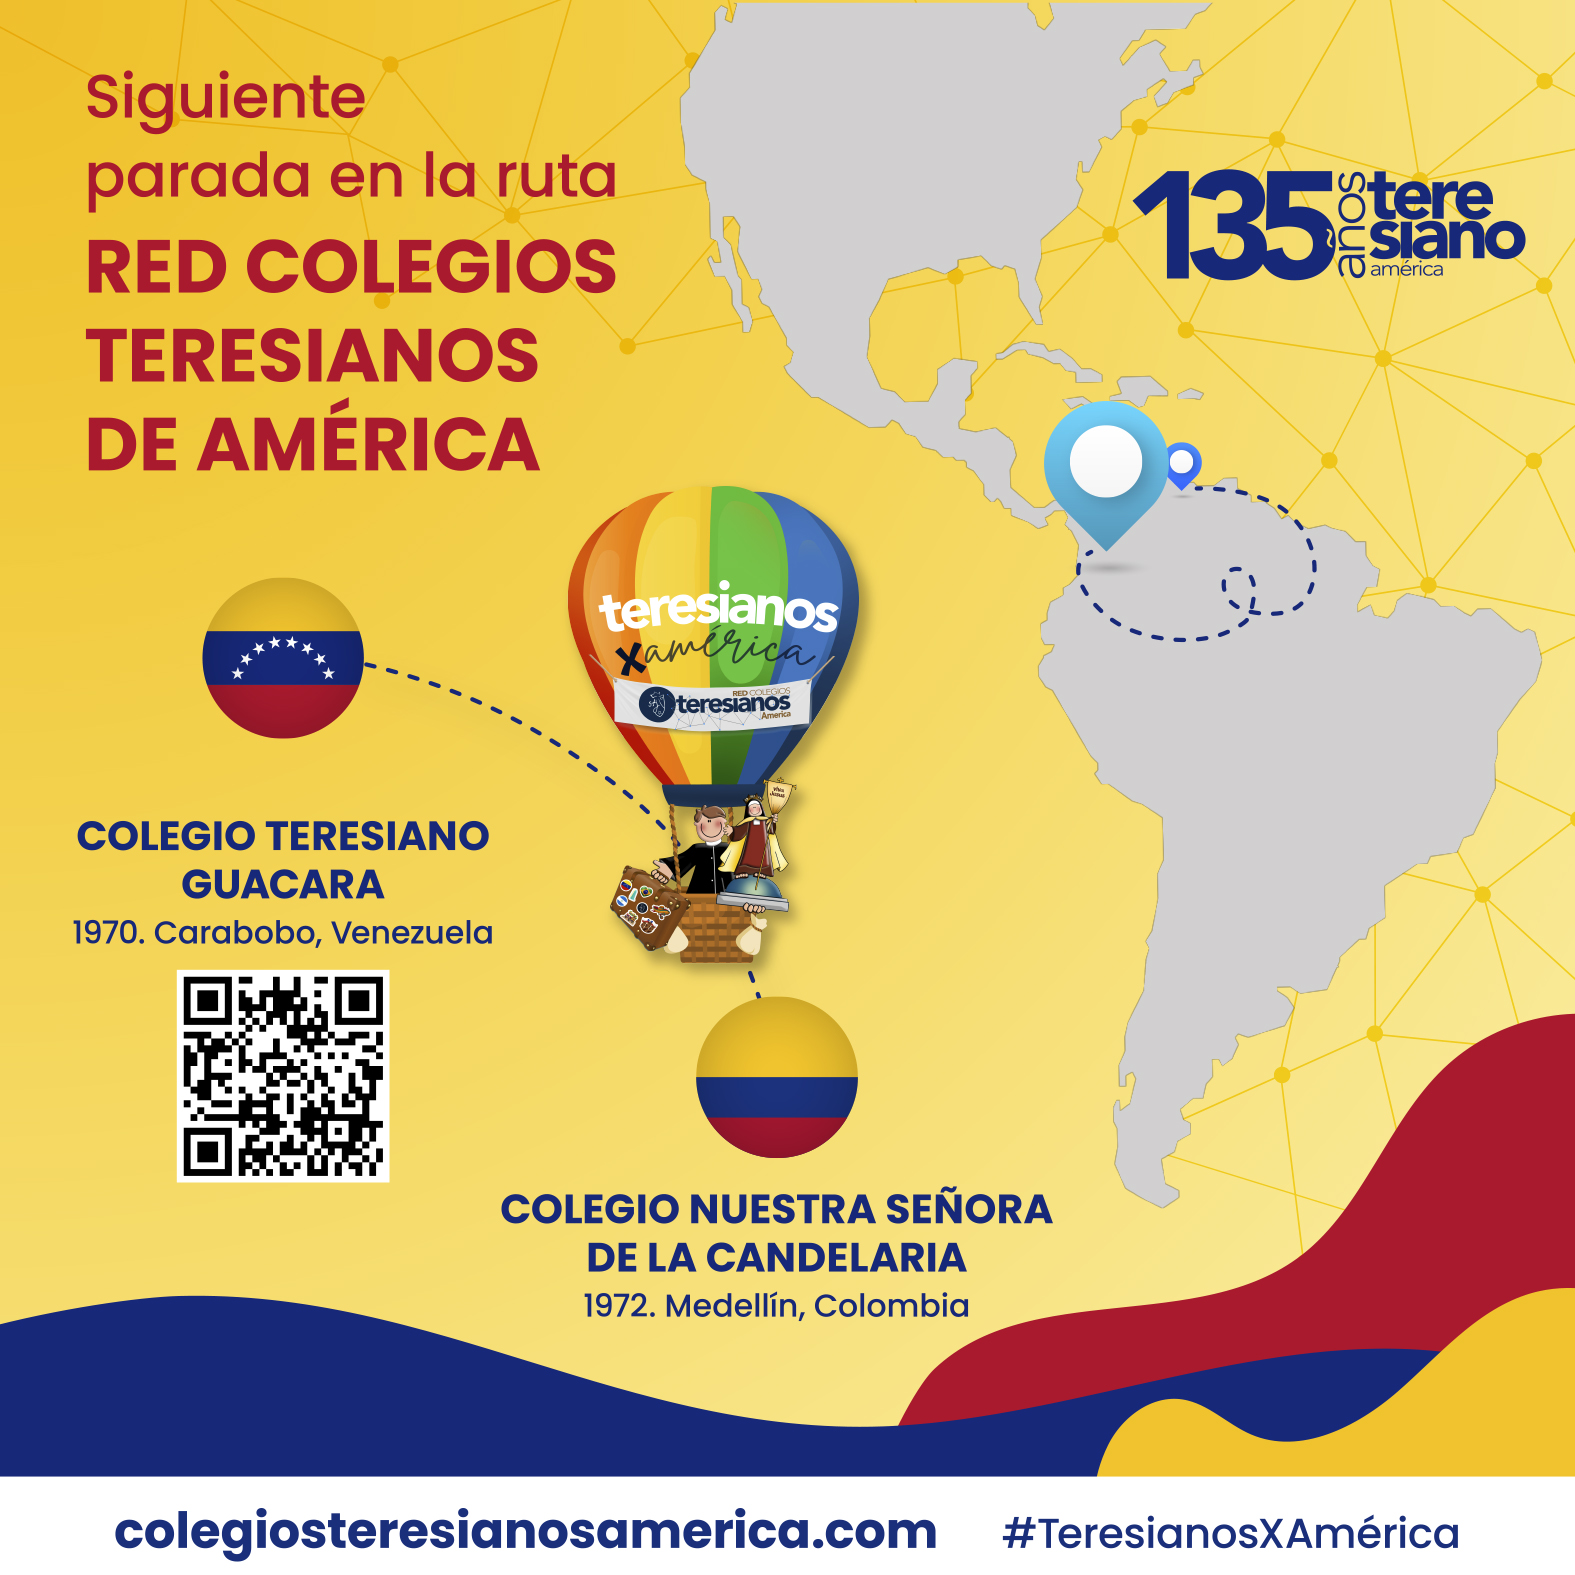 (c) Colegiosteresianosamerica.com